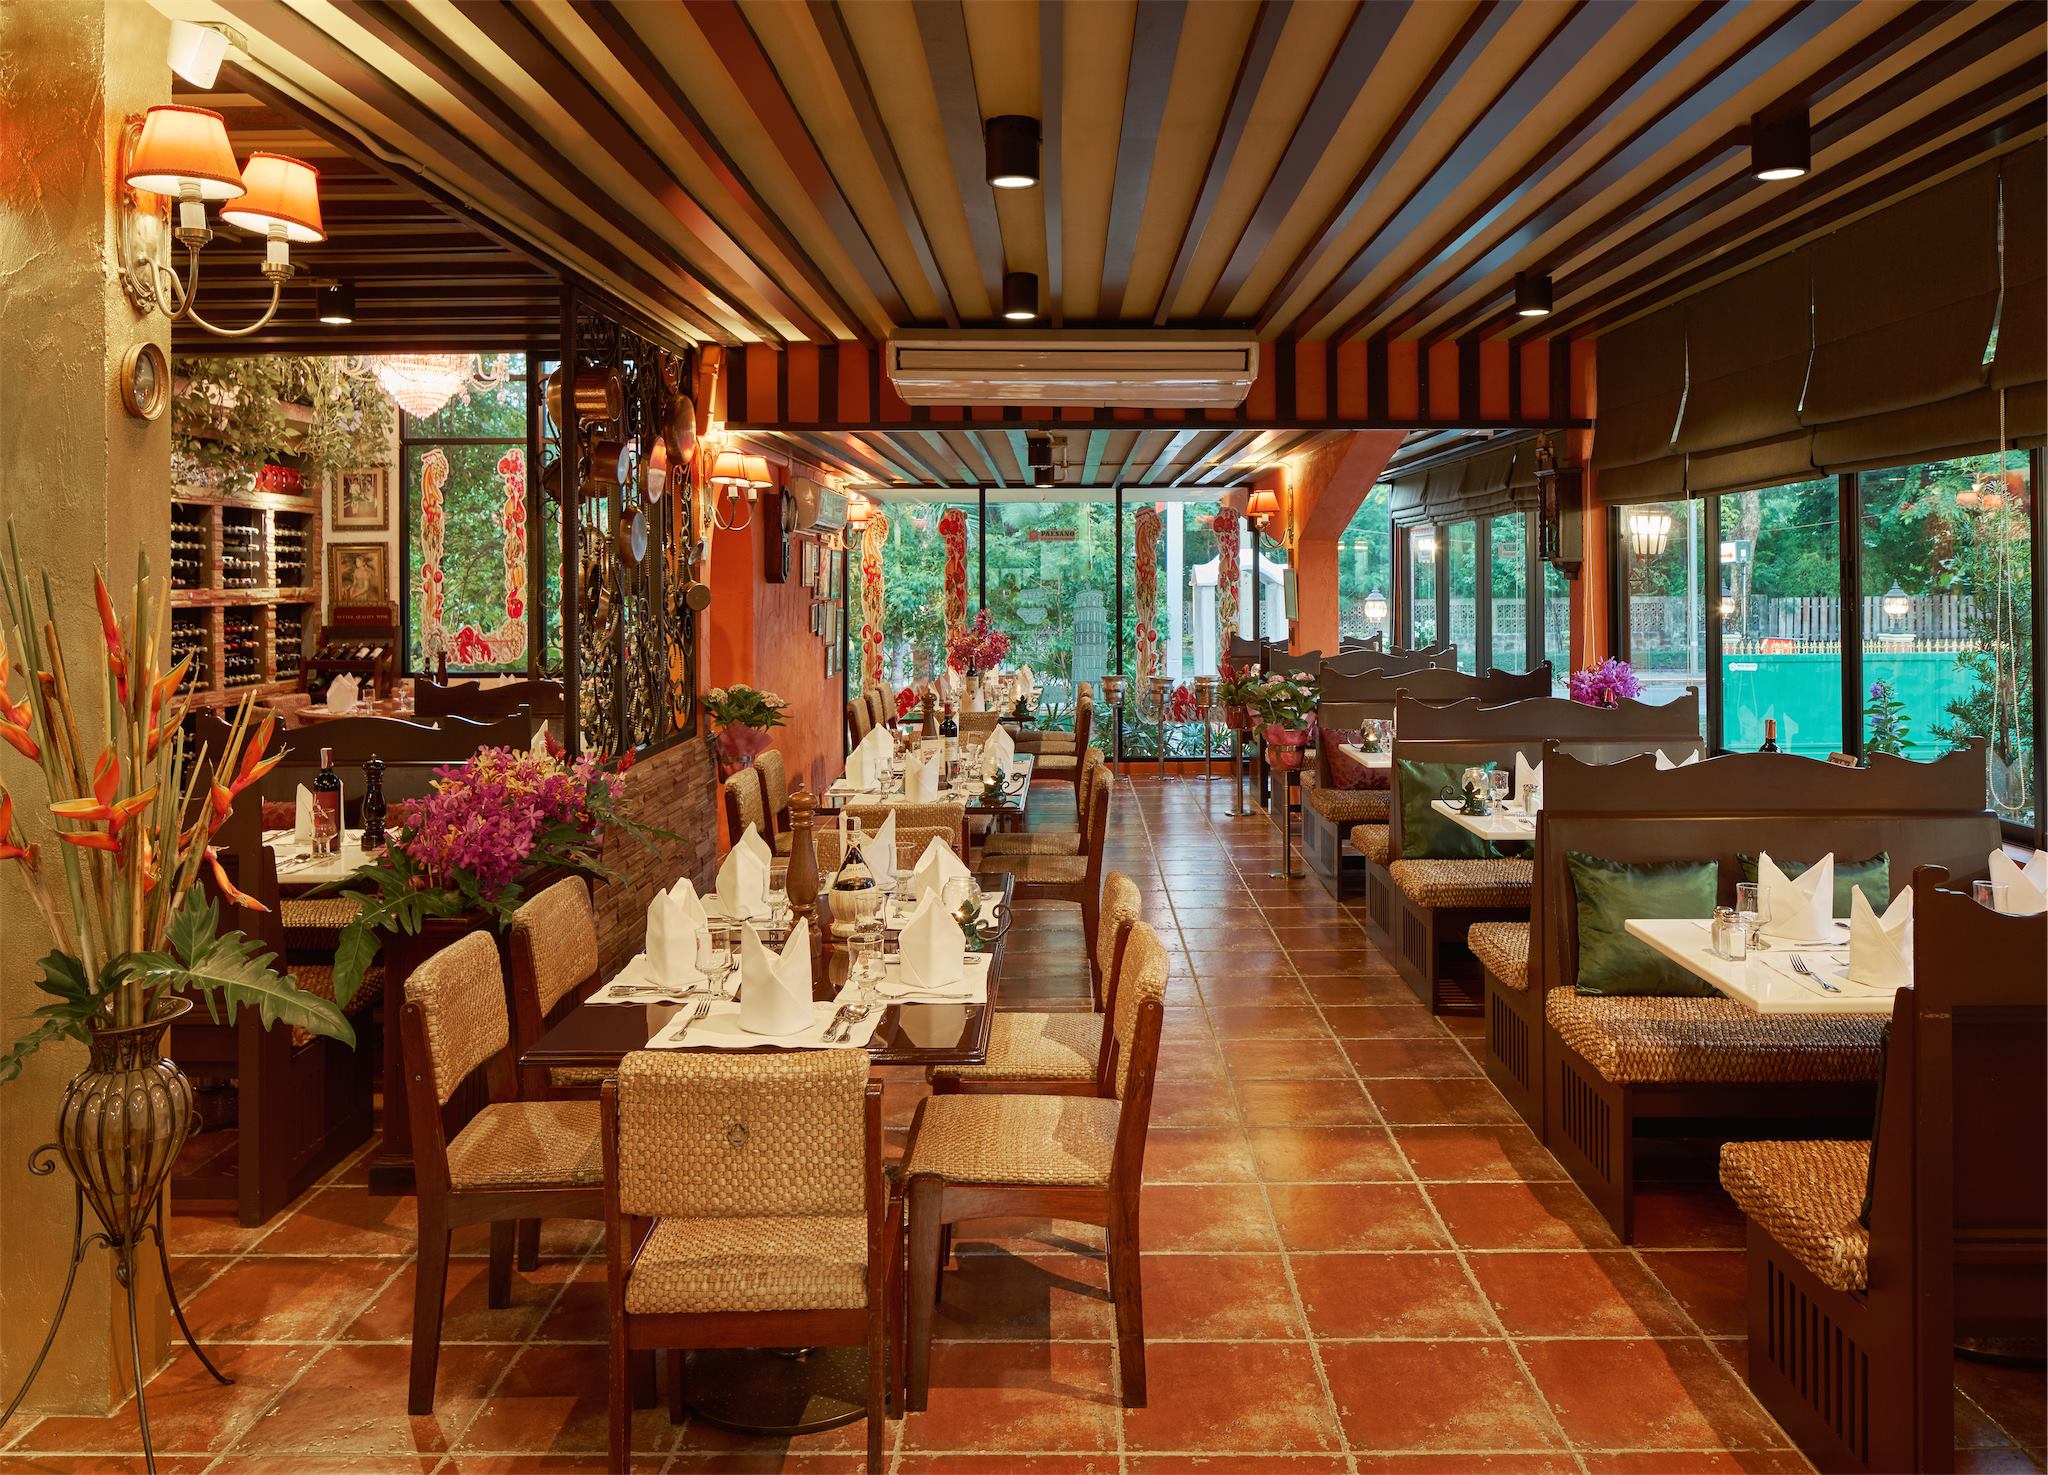 ภัตตาคารไพซาโน่ (Paesano Italian Restaurant) : กรุงเทพมหานคร (Bangkok)